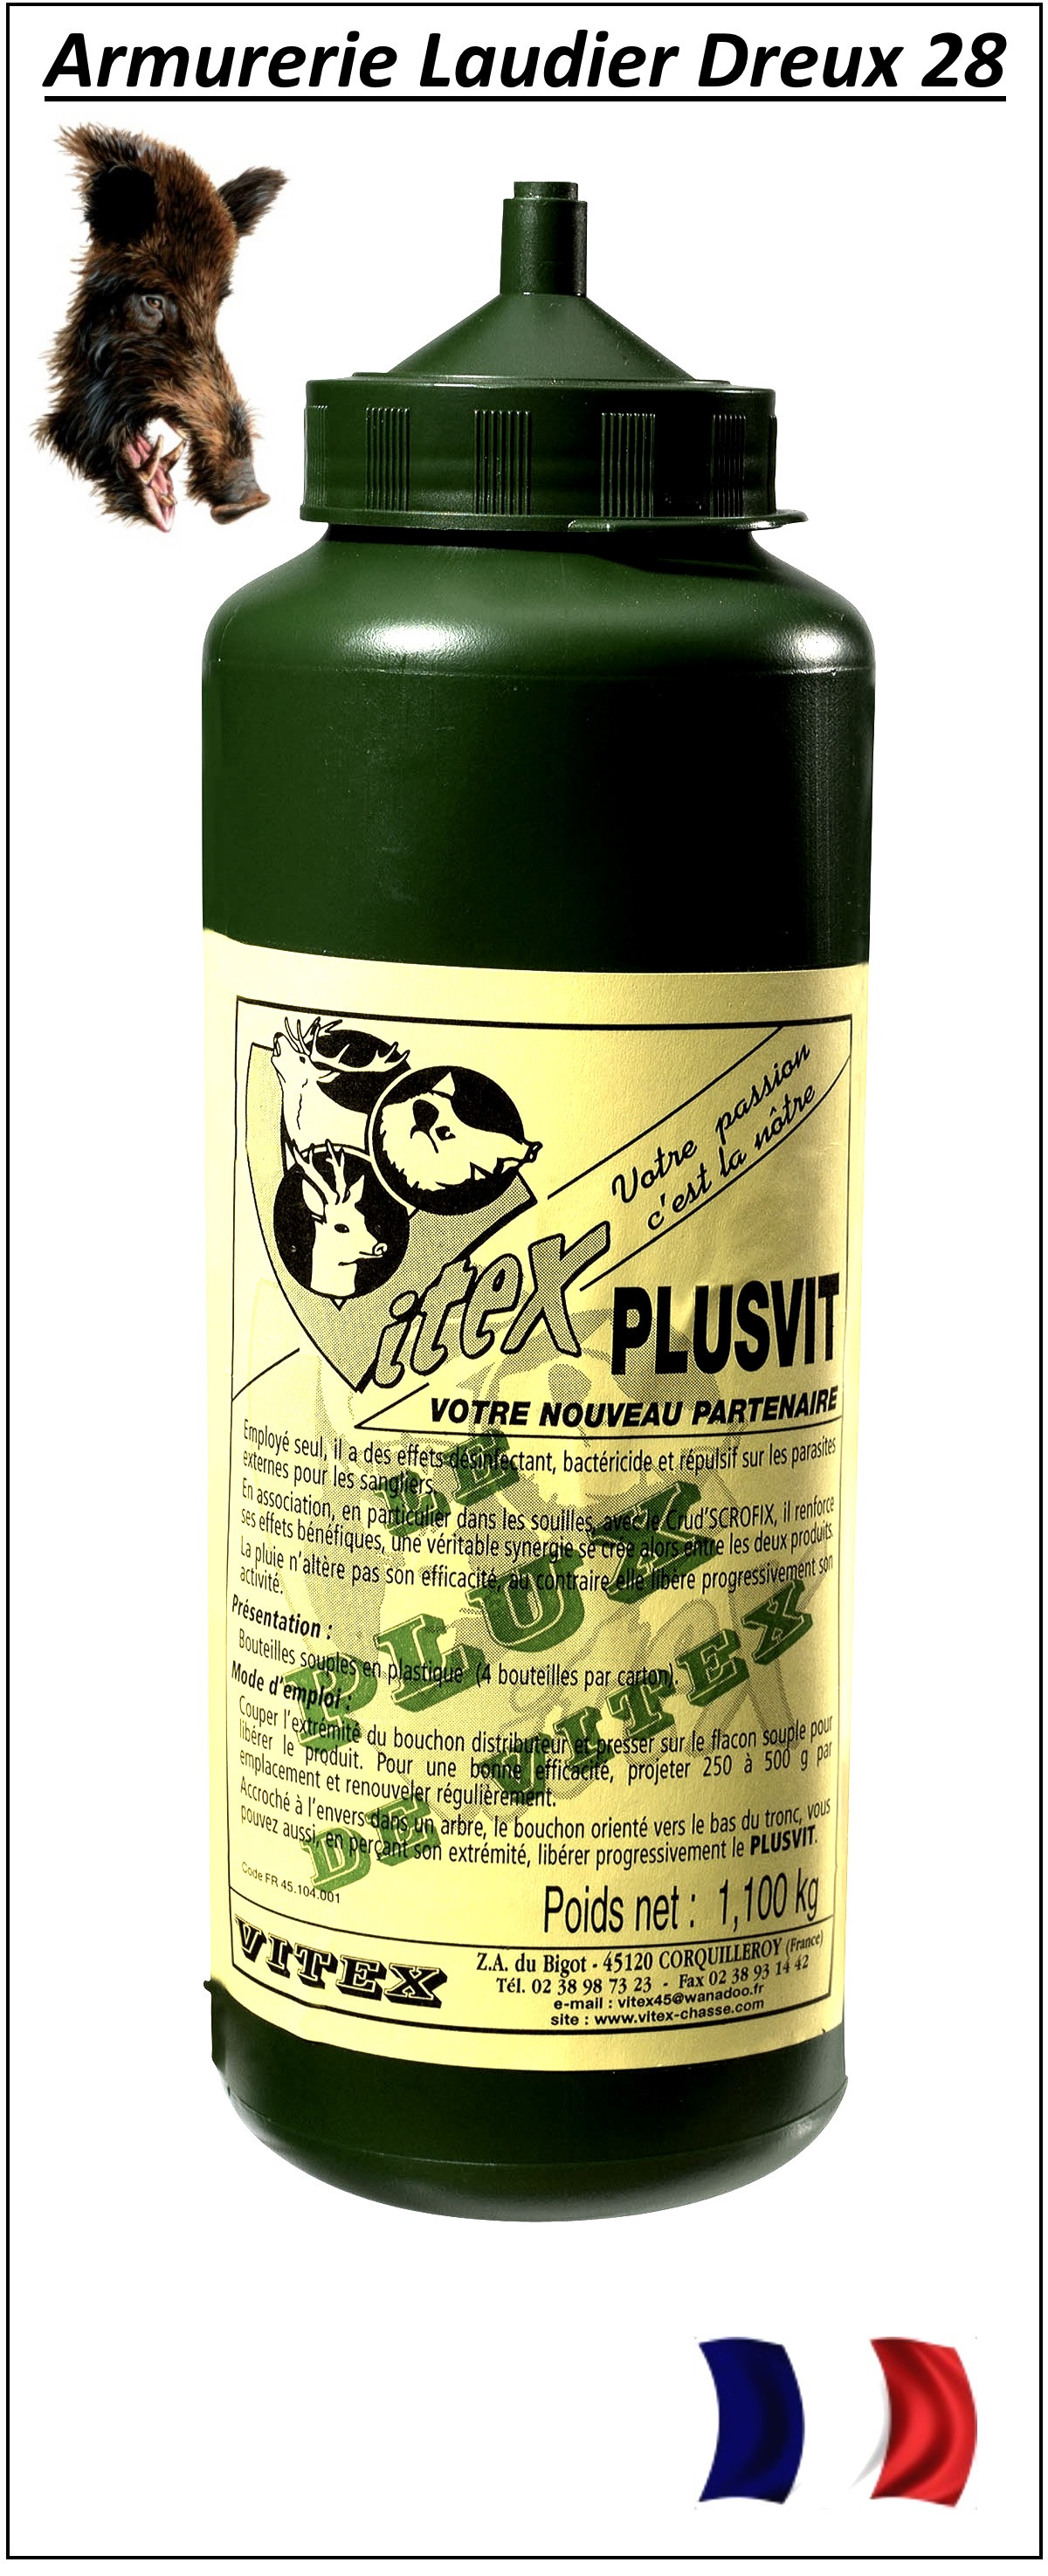  Plux-Plusvit-VITEX- pour attirer les sangliers-Ref 13266